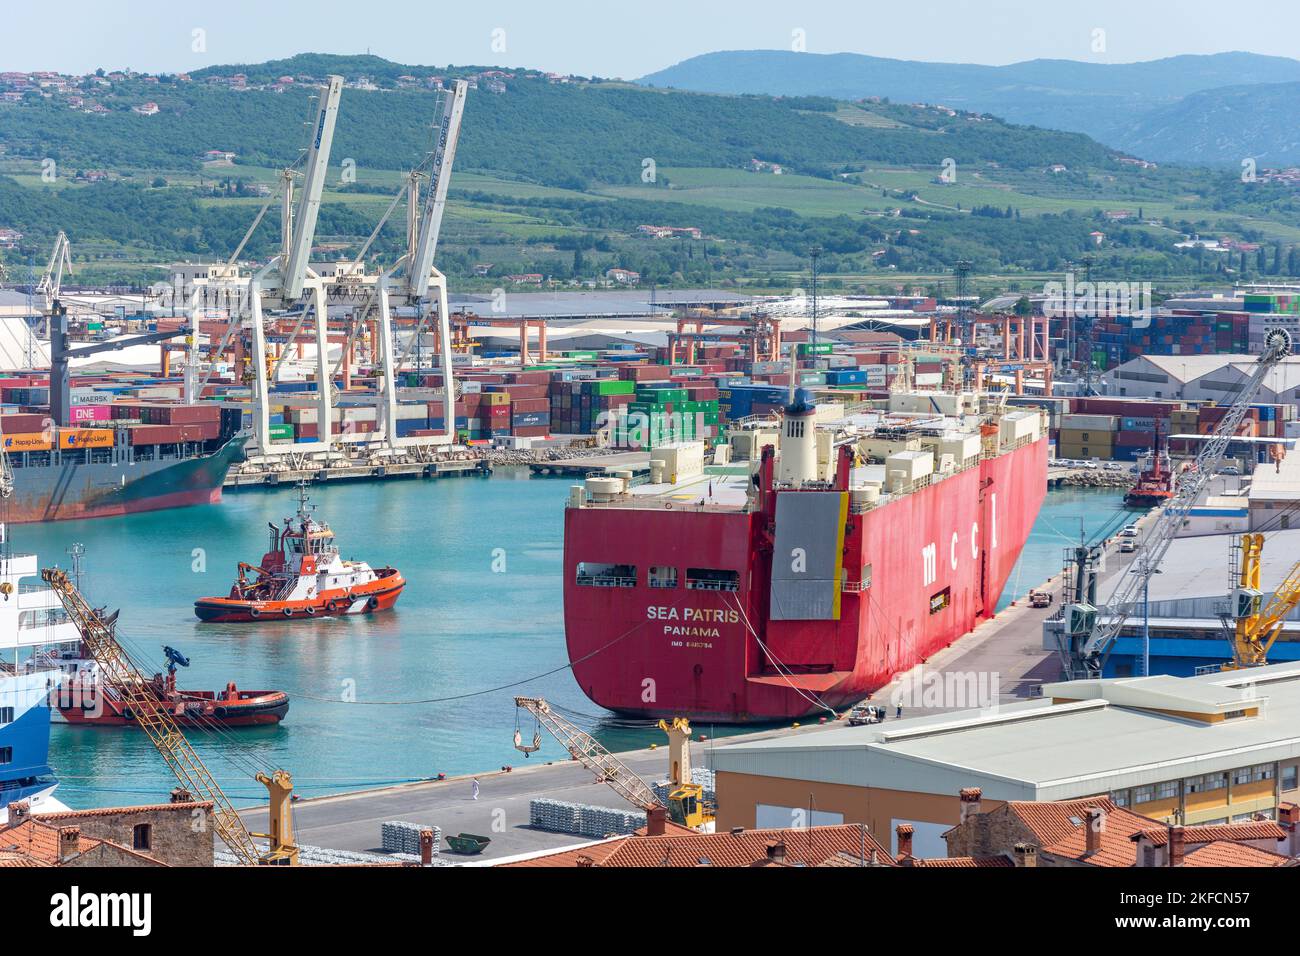 La nave portaerei Sea Patris ormeggiato nel porto di Capodistria, Capodistria, Istria slovena, Slovenia Foto Stock